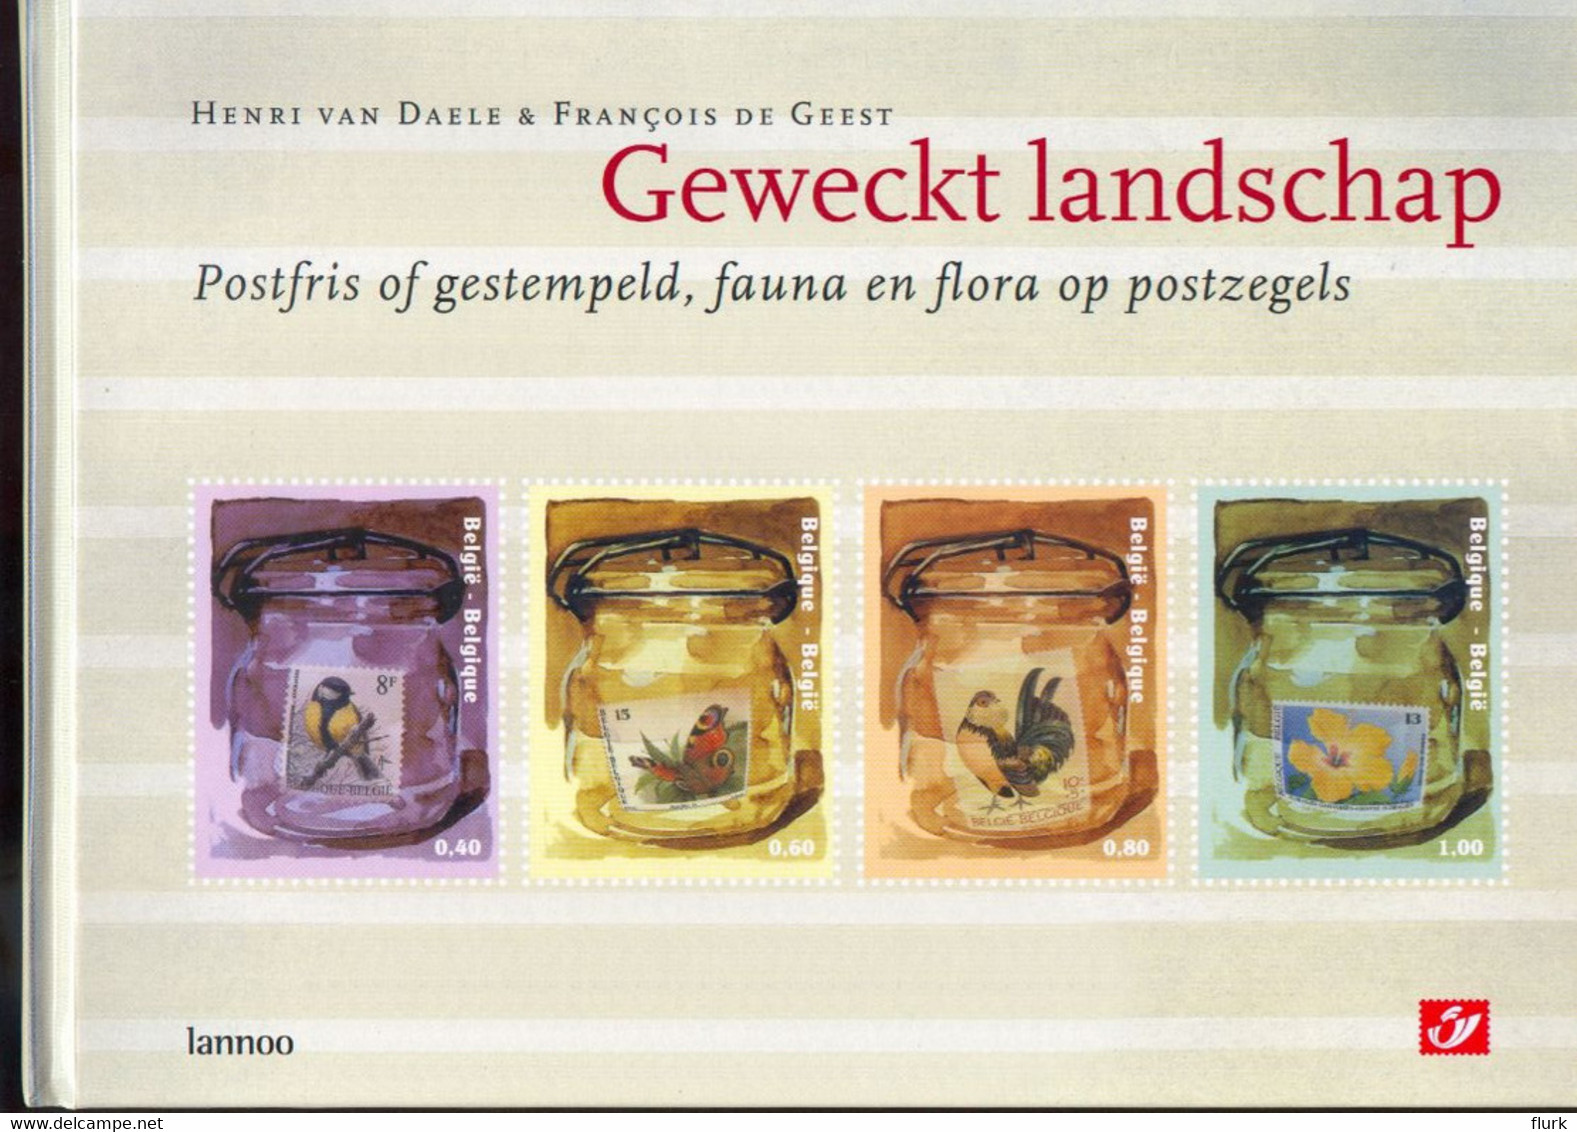 Geweckt Landschap Postfris Of Gestempeld, Fauna En Flora Op Postzegels Perfect - Temas